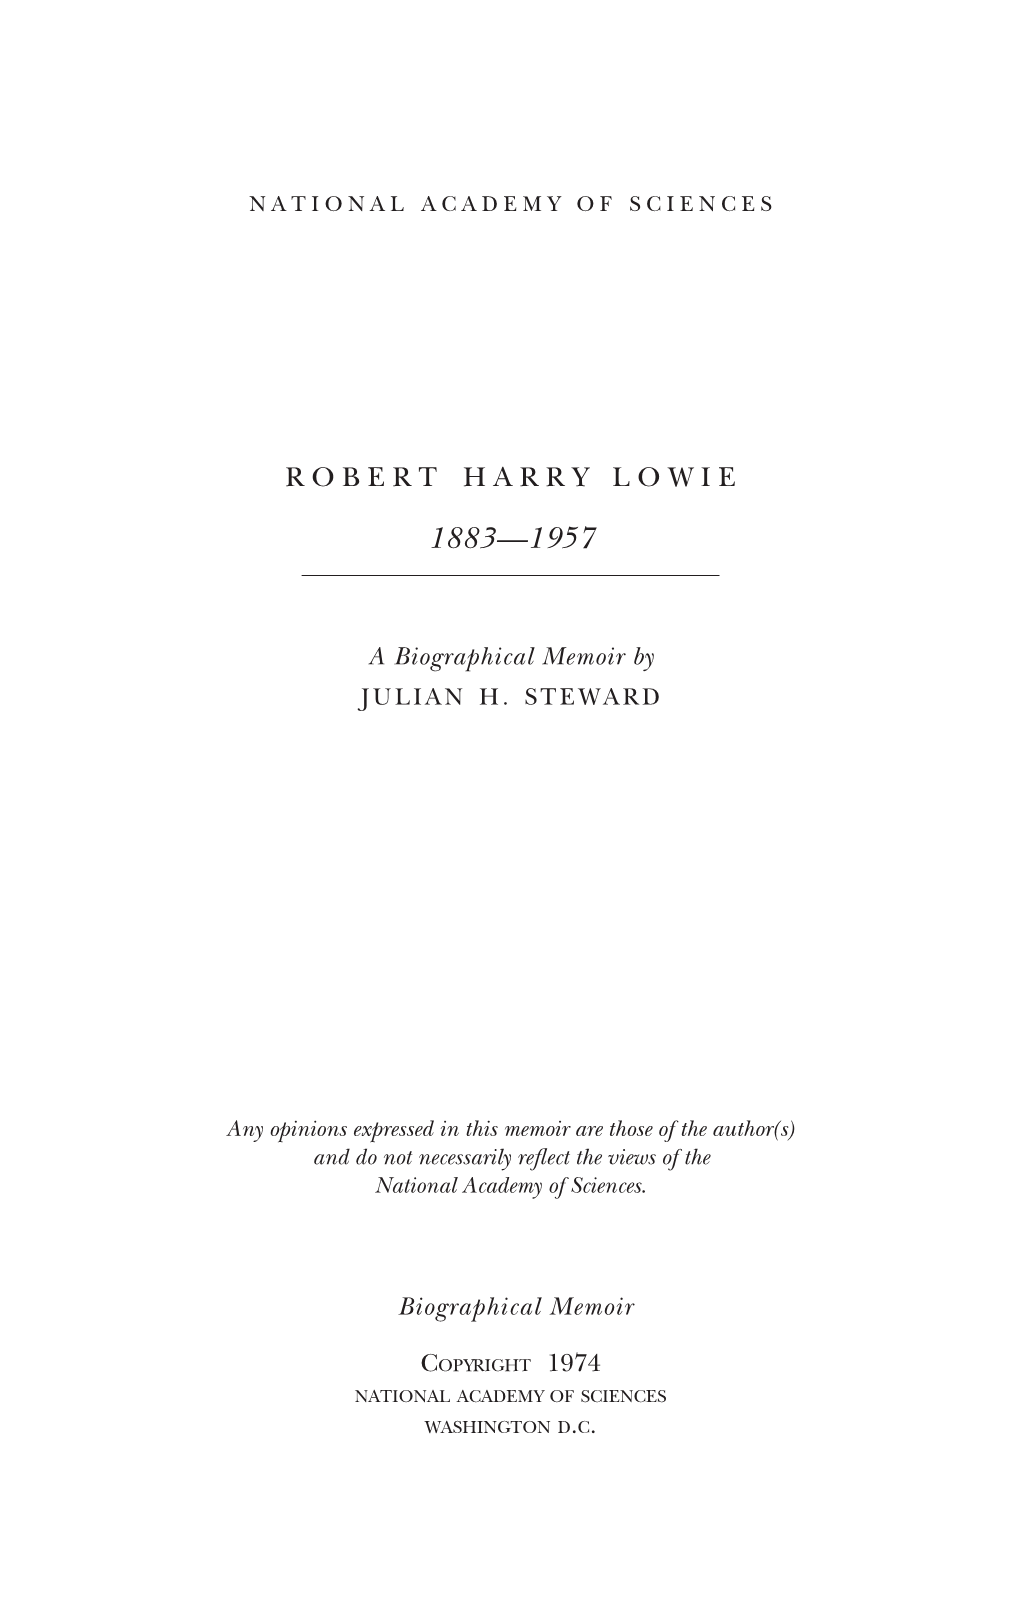 Robert Harry Lowie (]Une 12, 1883—September 21, 1957)